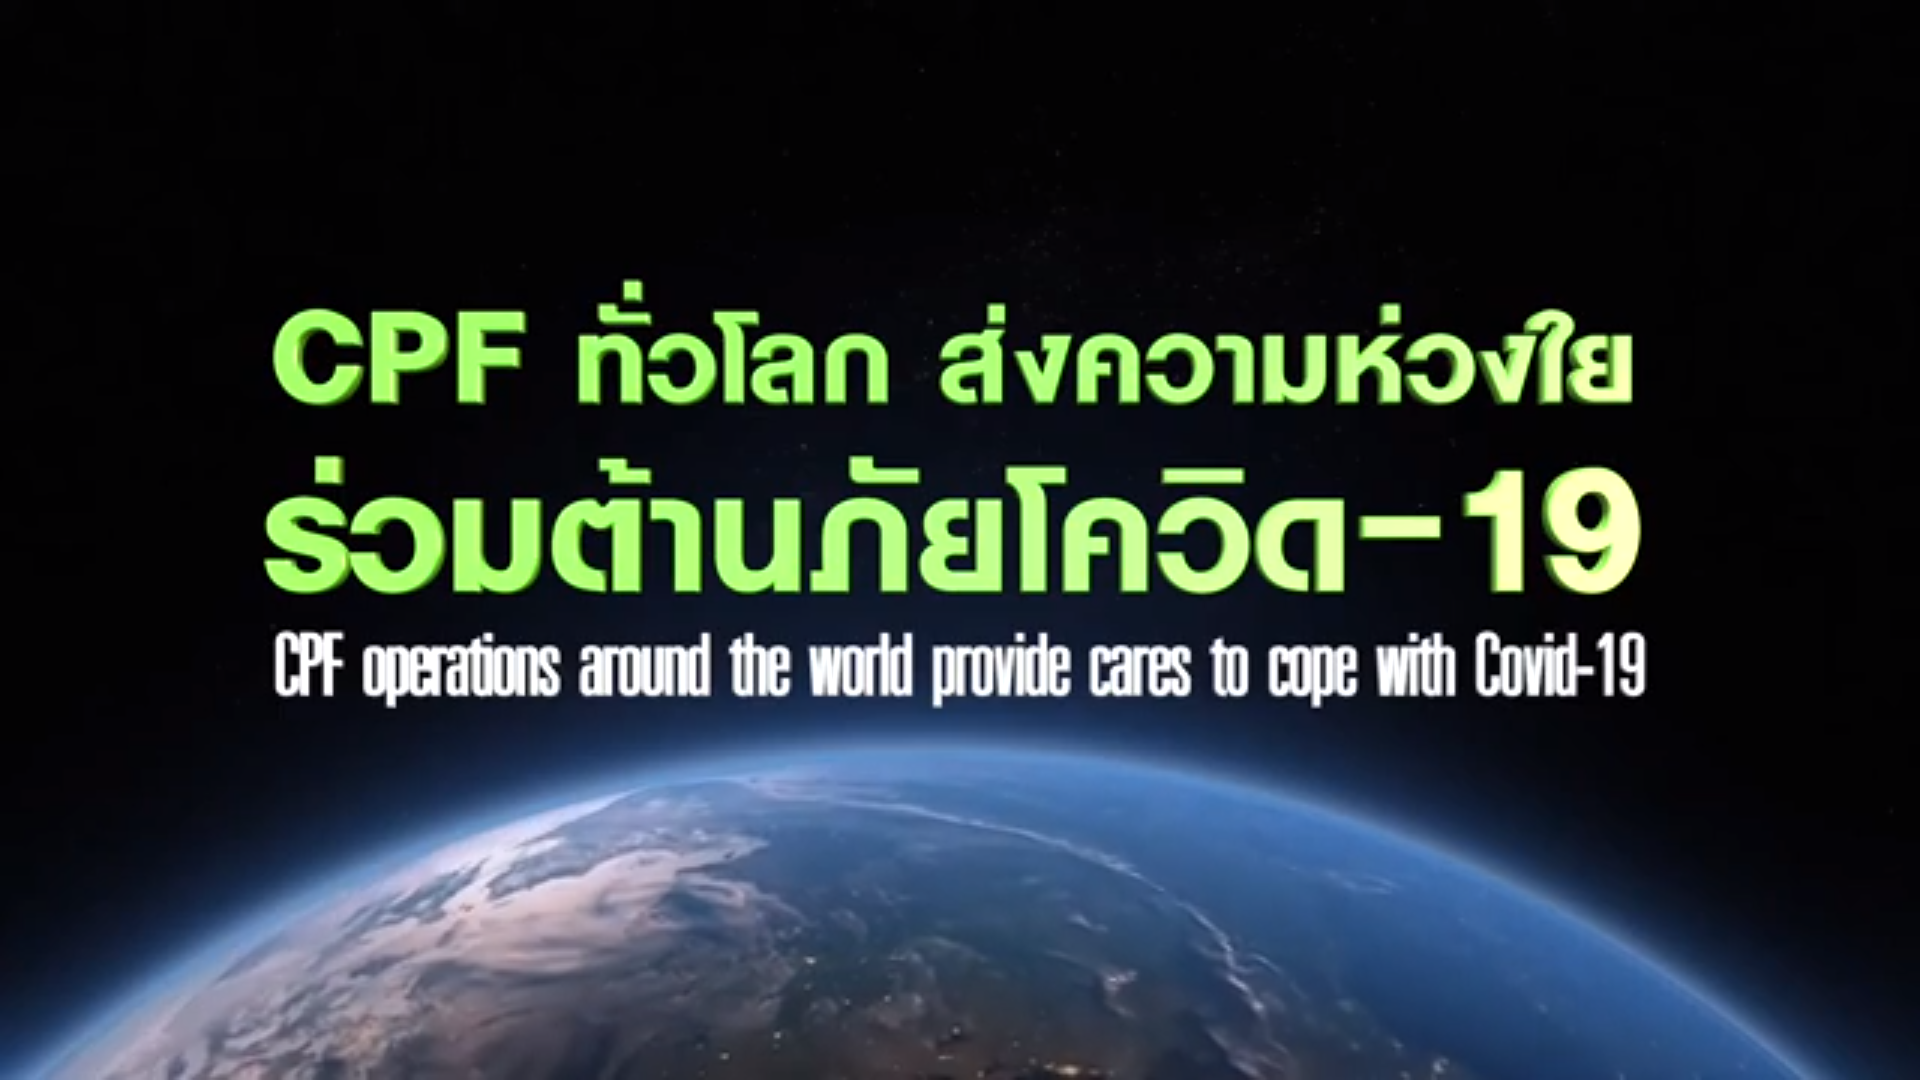 เรื่องดีดี CPF EP.27 ตอน CPF ทั่วโลก ส่งความห่วงใย ร่วมต้านภัยโควิด-19